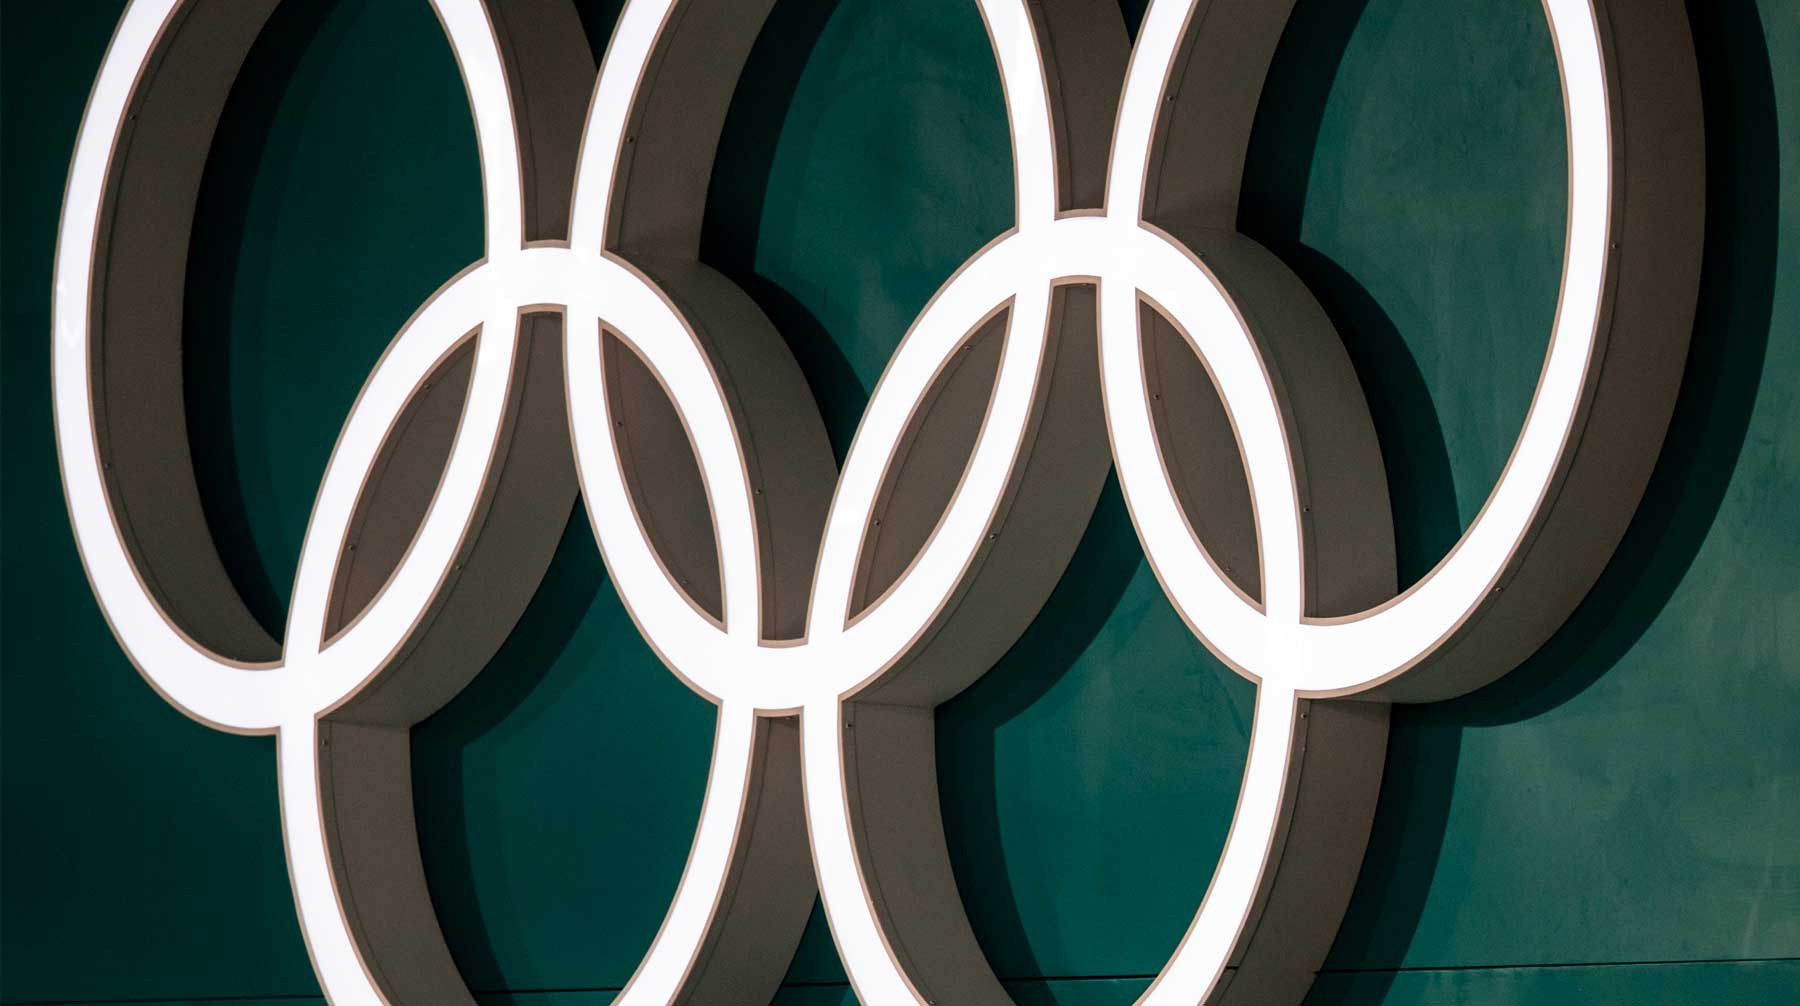 Dailystorm - Times: Россию могут не допустить на Олимпиаду-2020 из-за допингового скандала